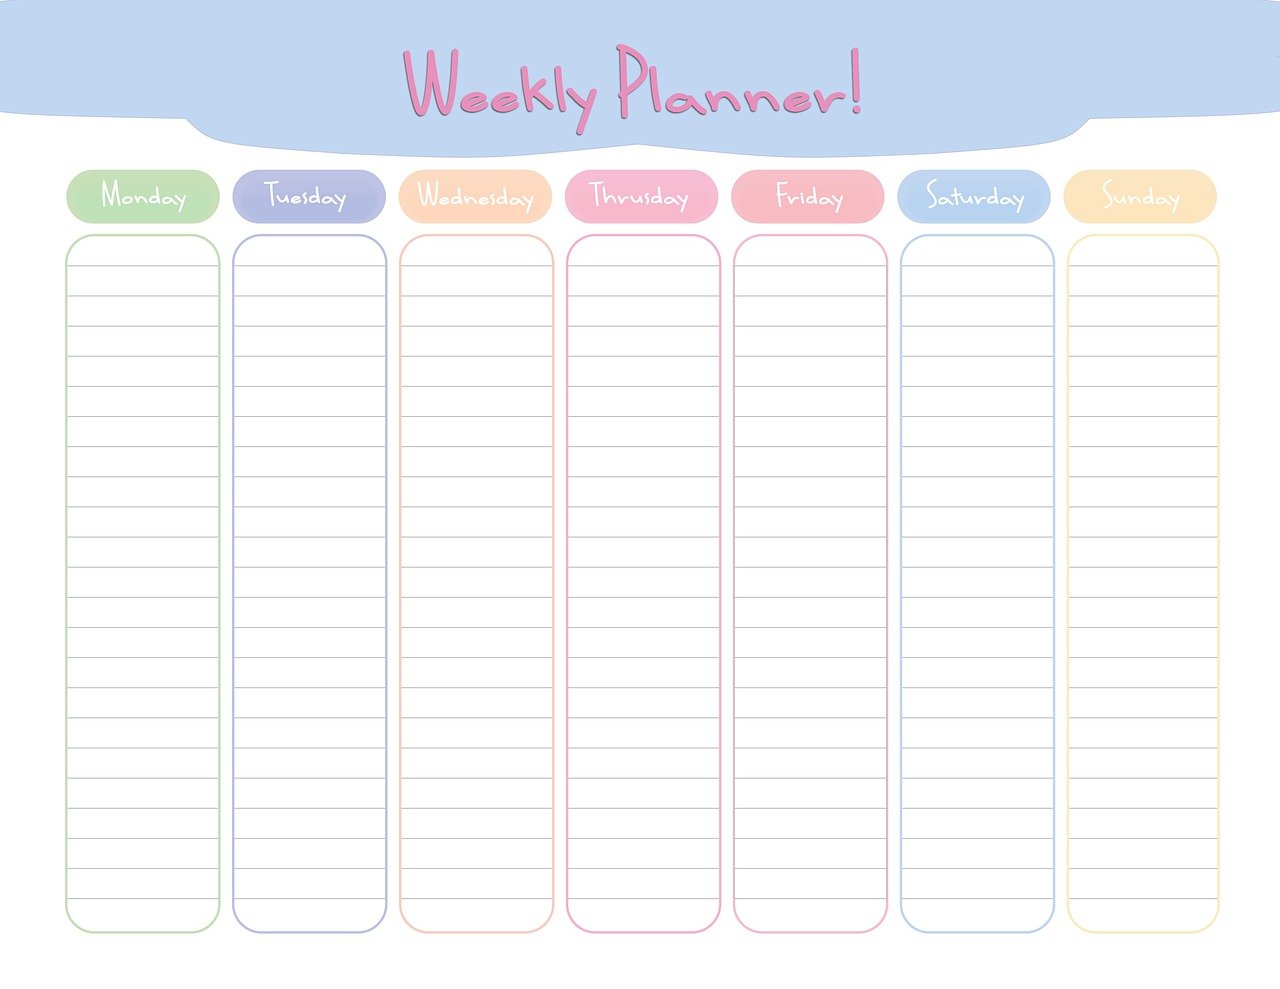 Cute weekly planner